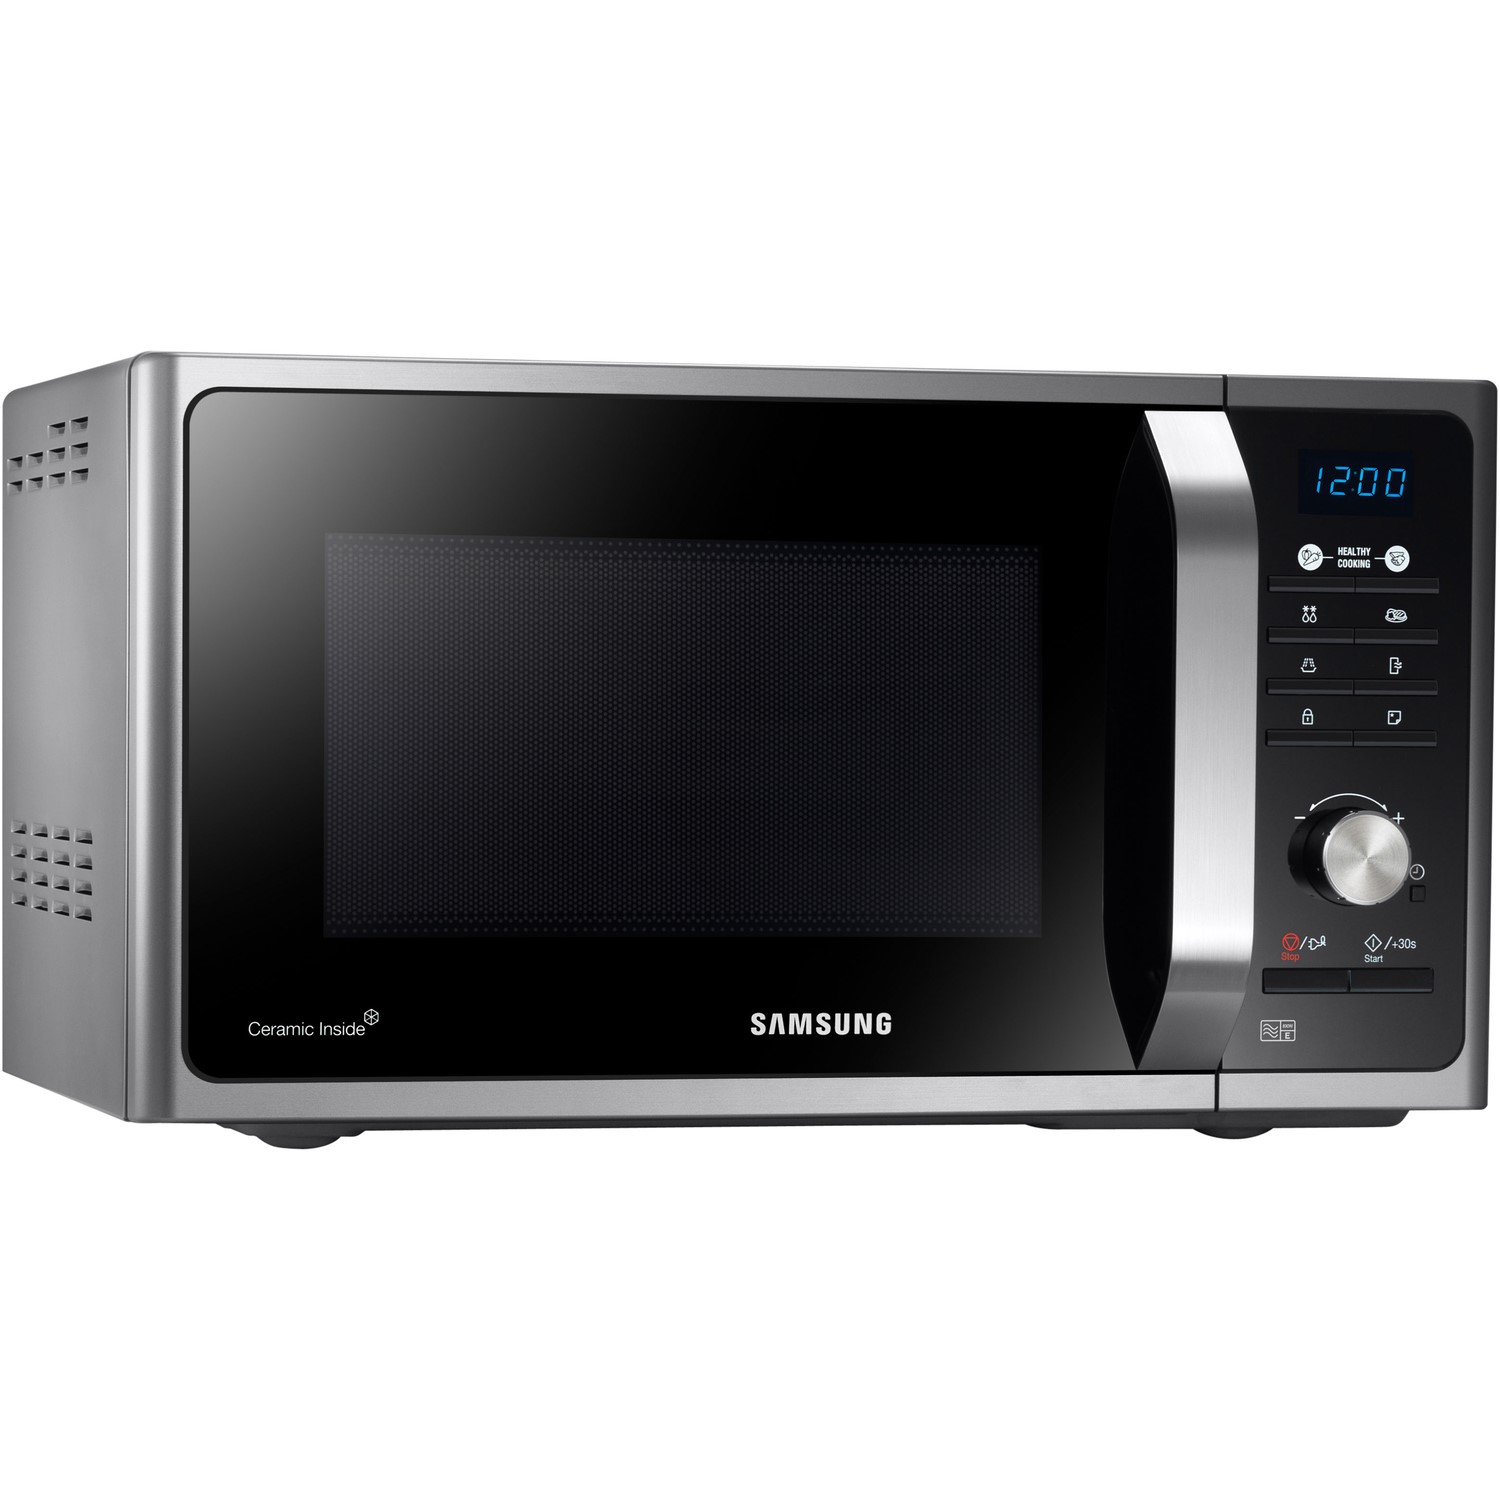 Samsung MS23F301TAS 23 Litre Microwave - Silver 8806086006286 | eBay